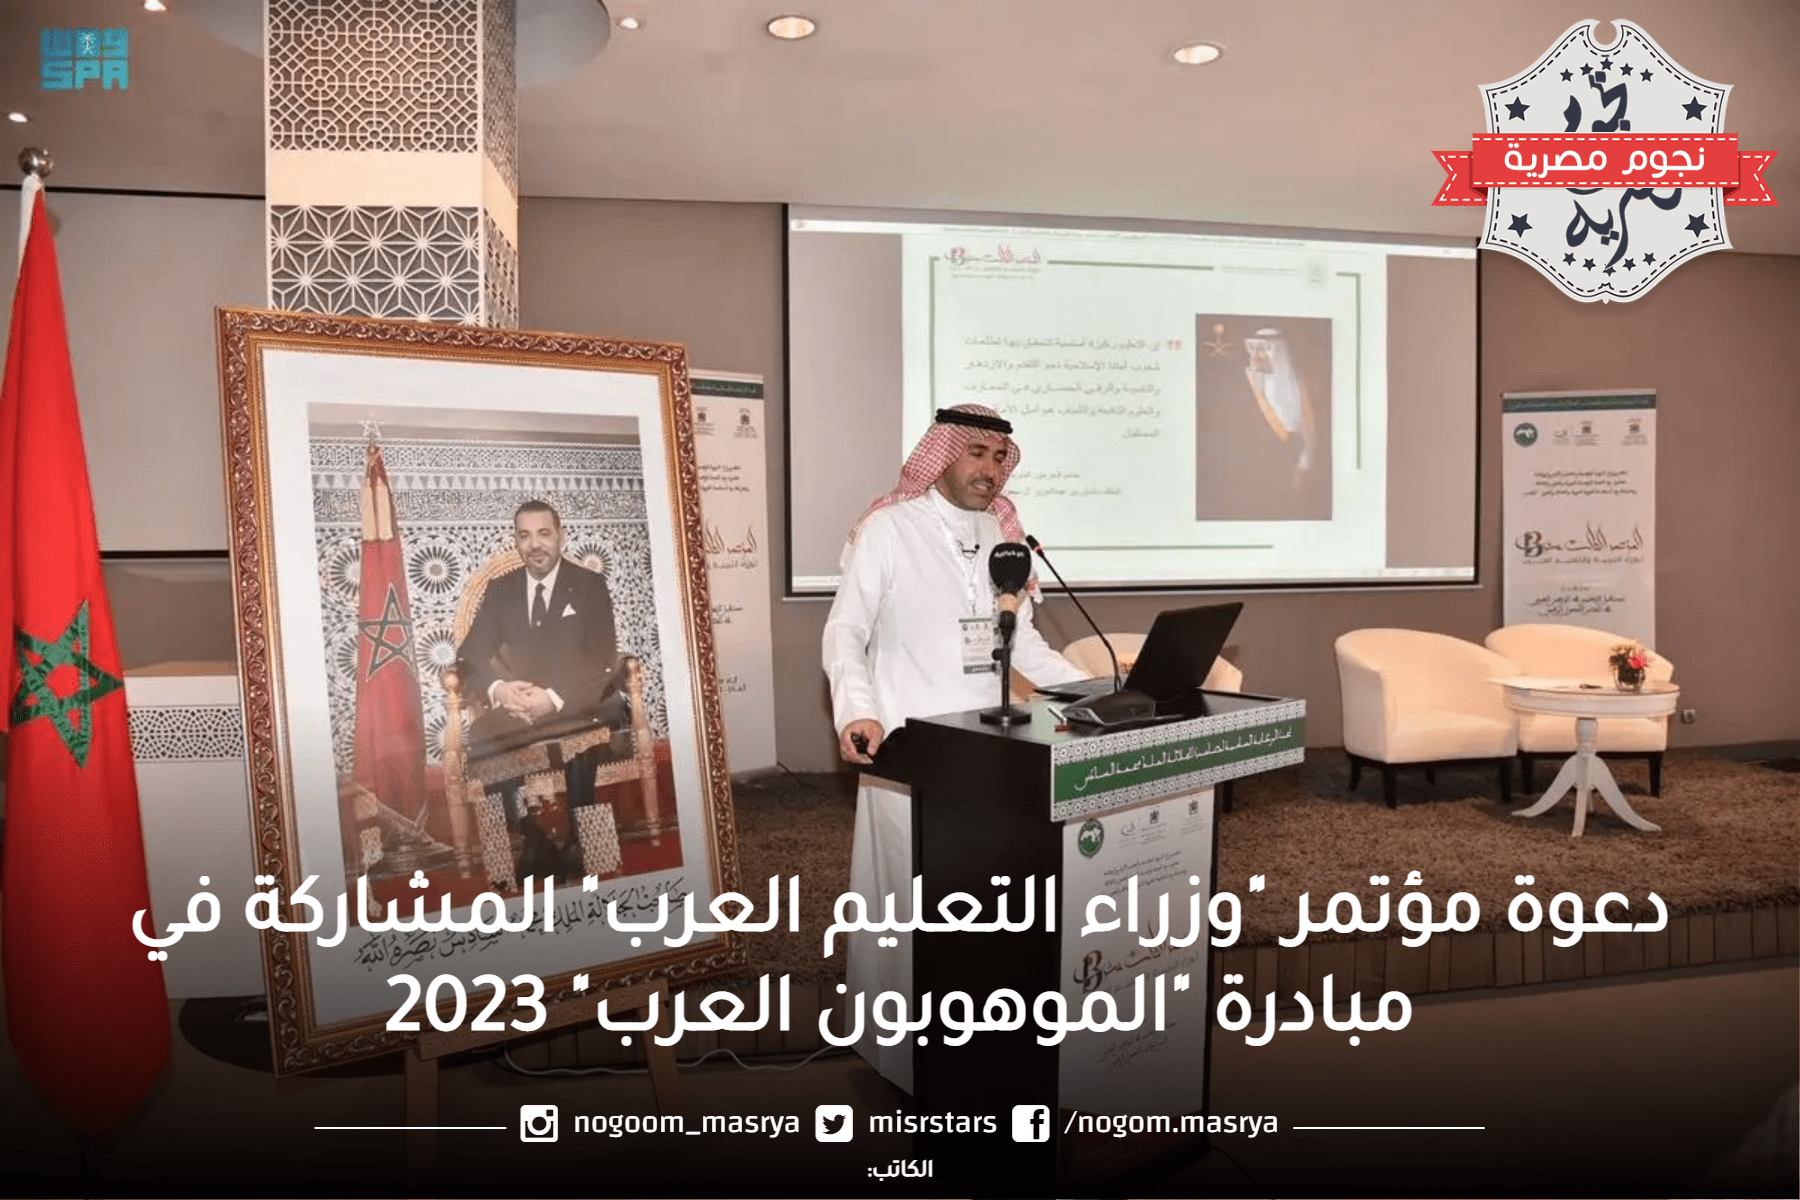 دعوة مؤتمر "وزراء التعليم العرب" المشاركة في مبادرة "الموهوبون العرب" 2023